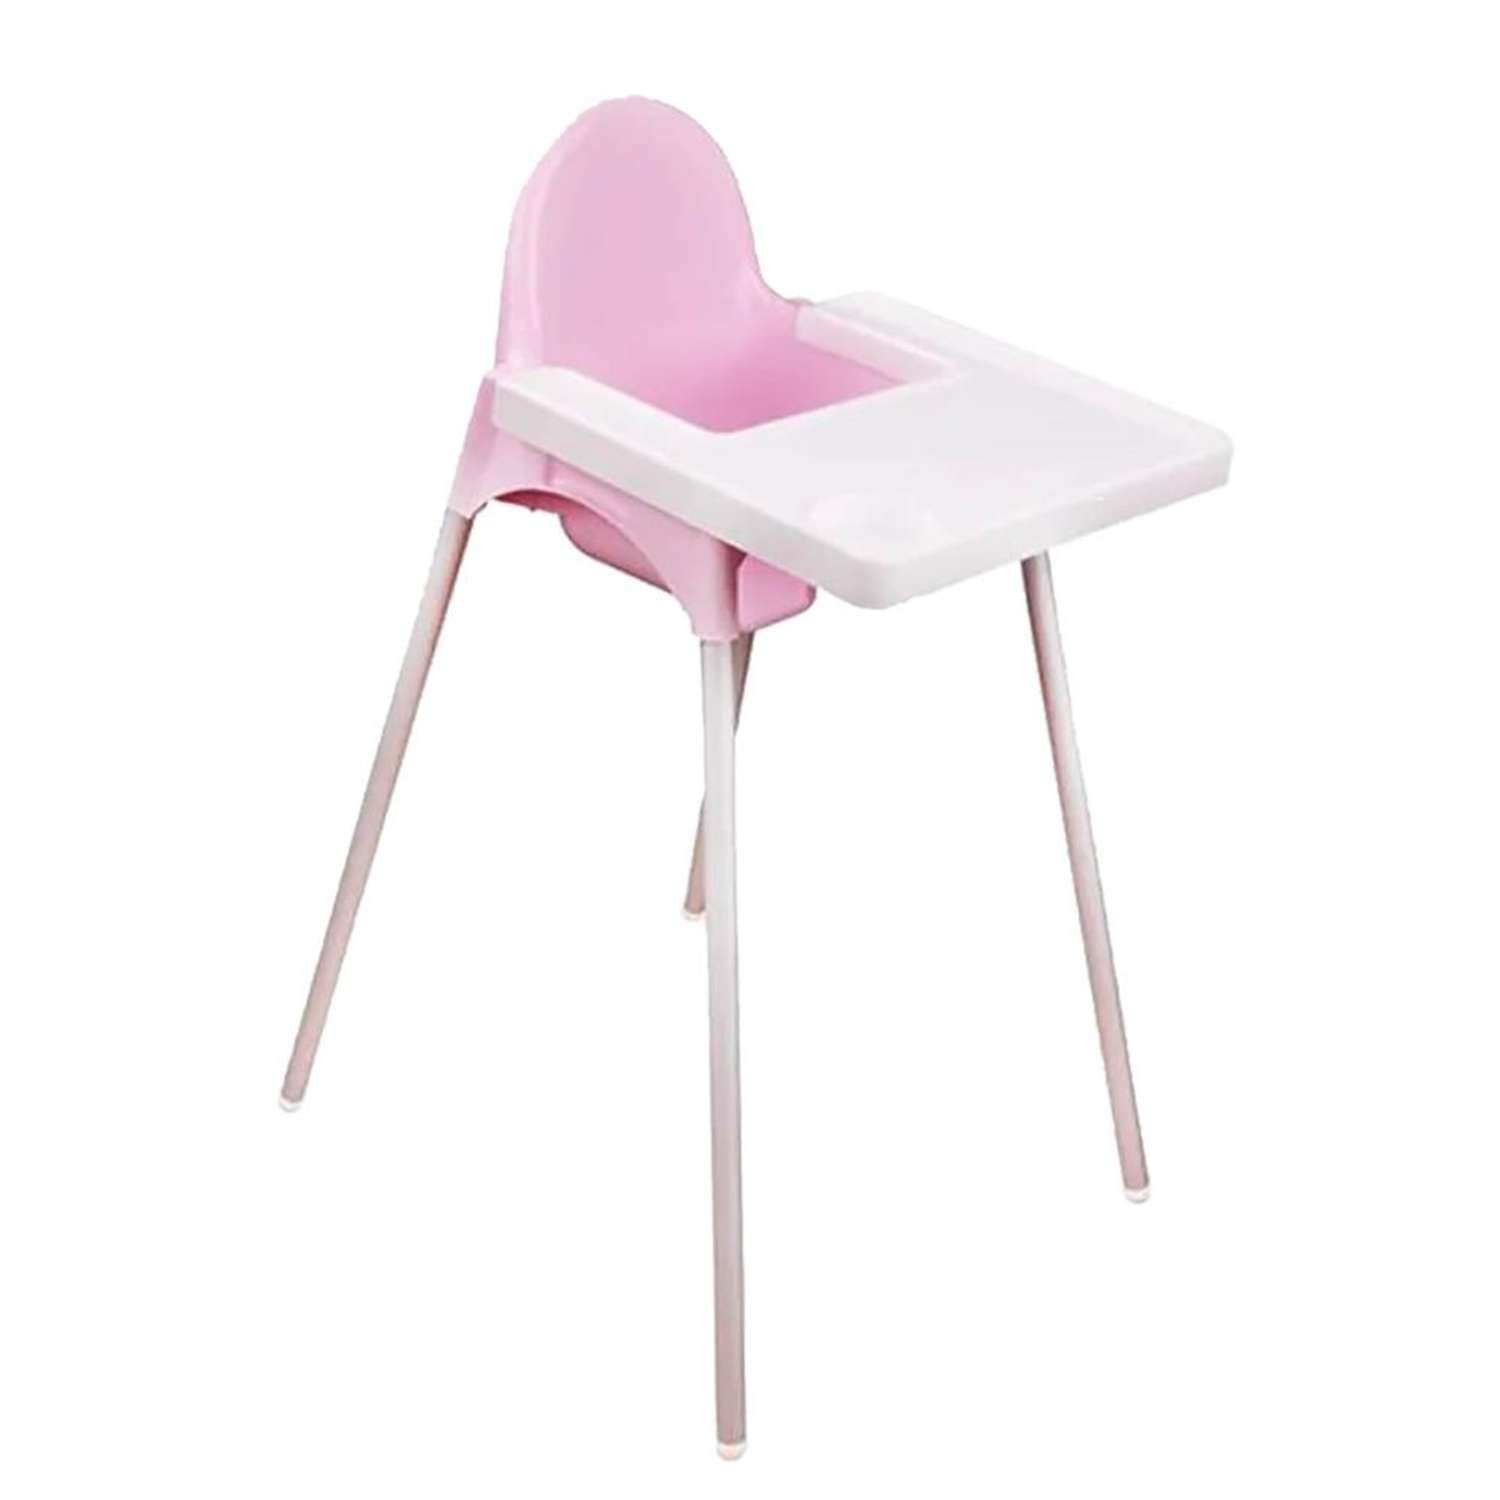 стулья для детей для кормления от 3 лет